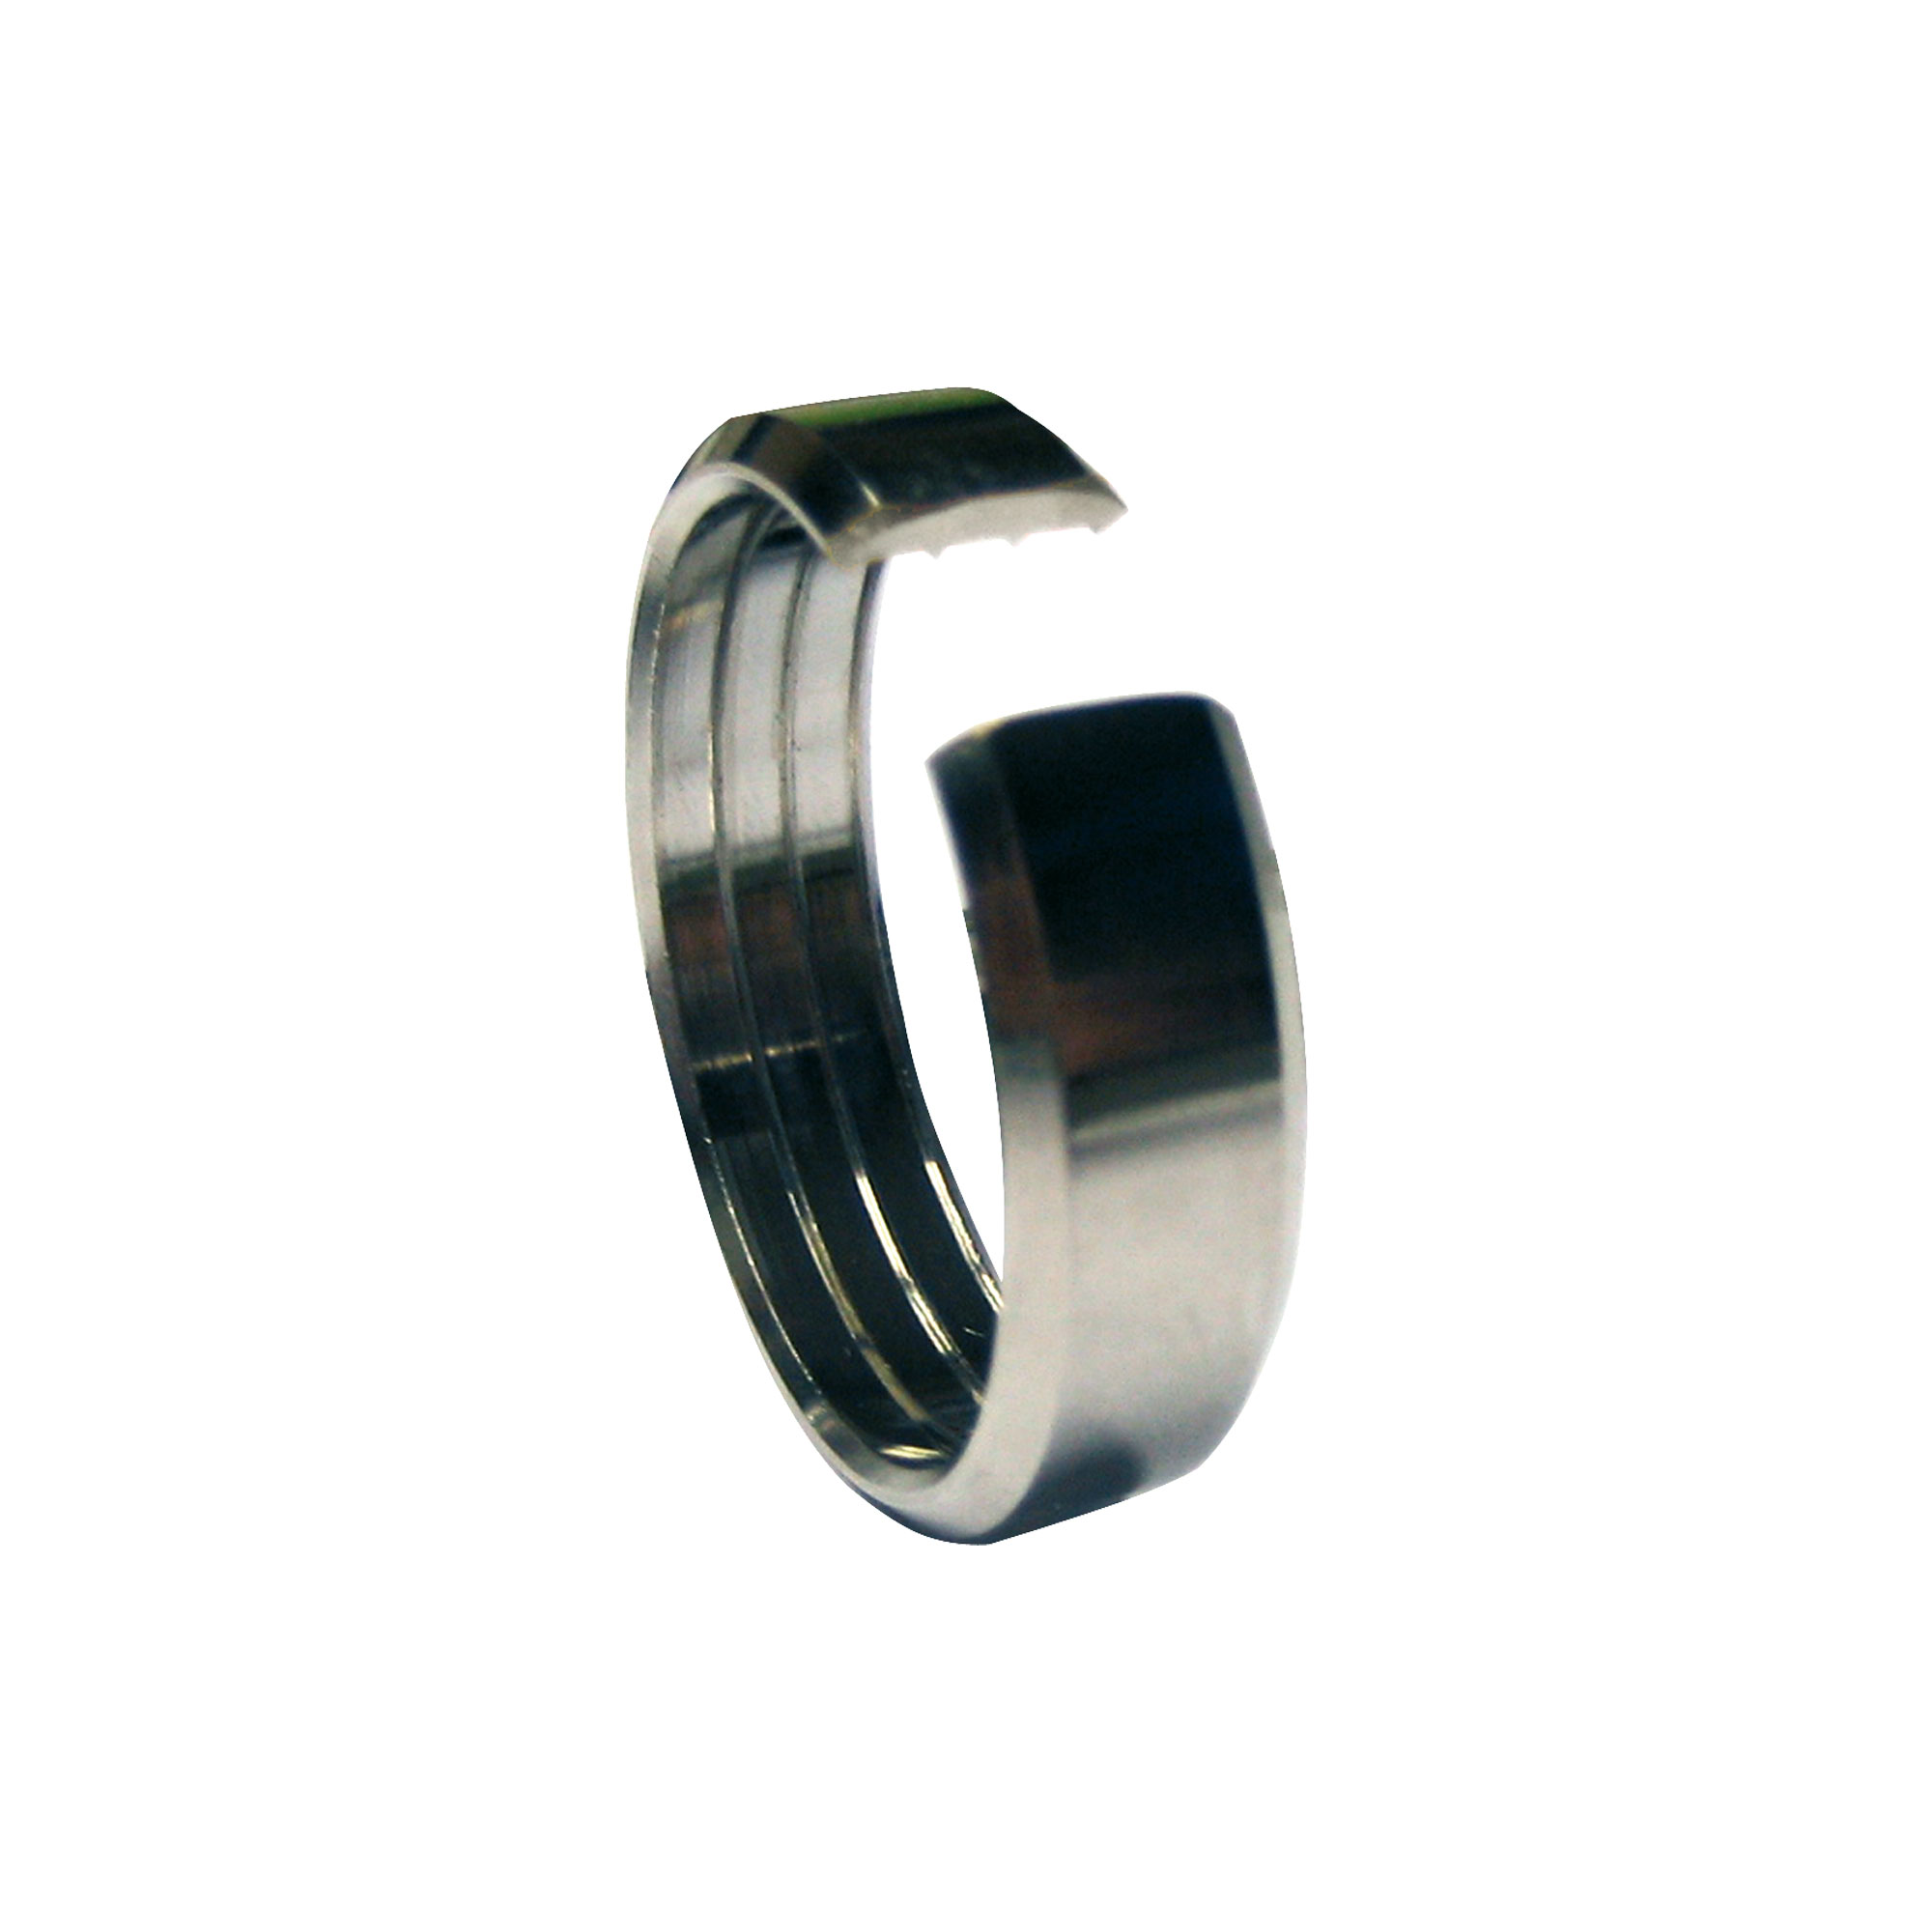 Кольцо 32 мм. Кольцо обжимное 22 мм. Jif обжимное кольцо. Обжимное кольцо с ушком 32. Кольцо фальцевое обжимное.